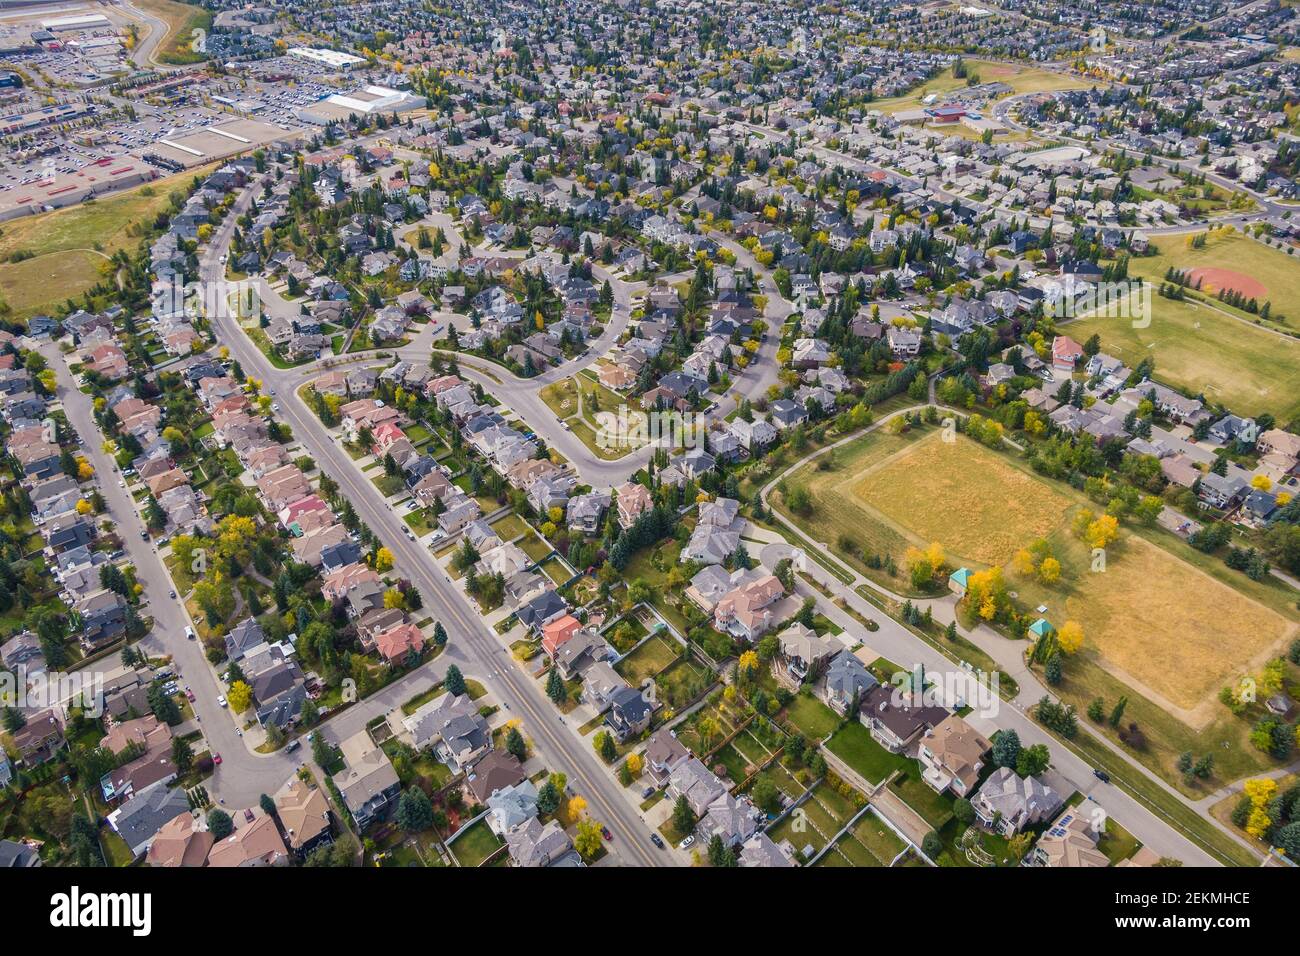 Vue aérienne des maisons et des rues du quartier résidentiel pendant la saison d'automne à Calgary, Alberta, Canada. Banque D'Images